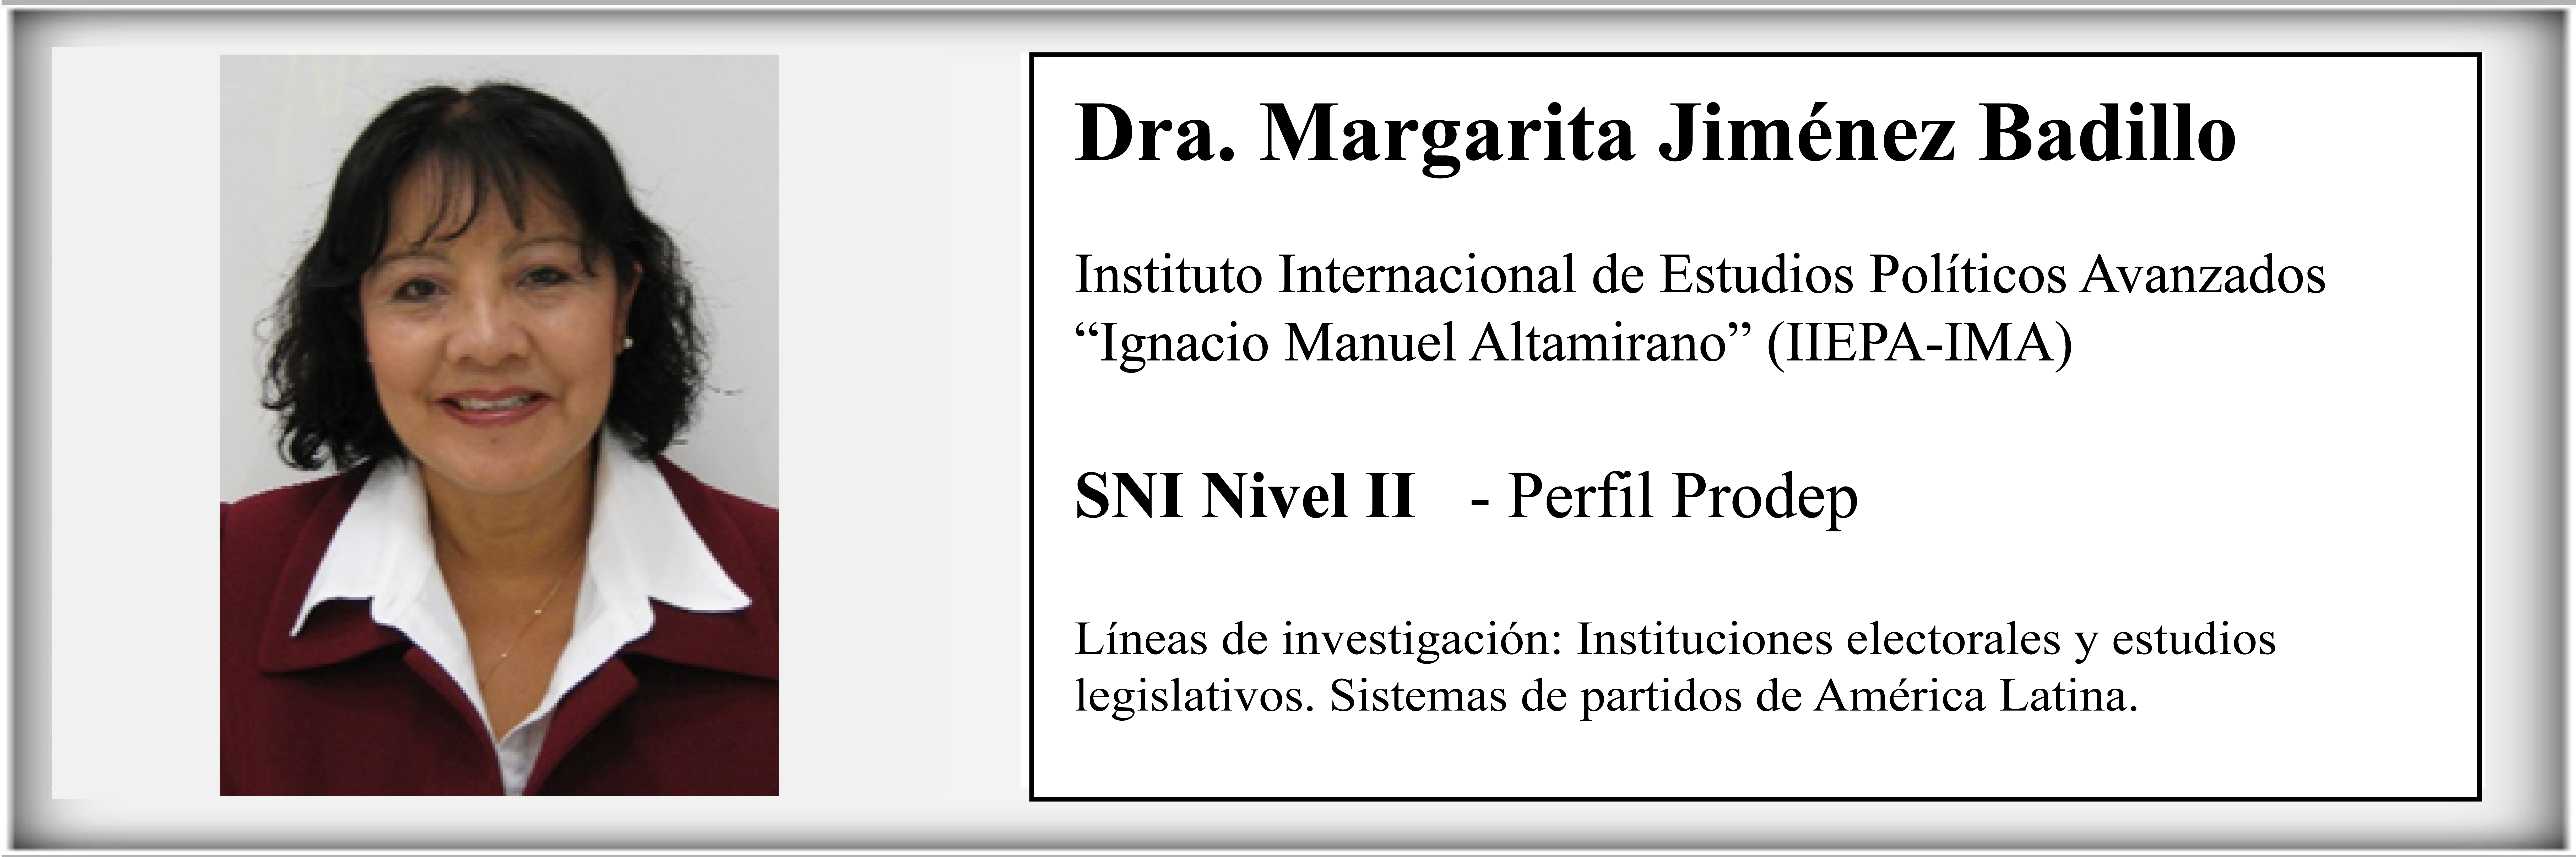 Principal Dra Margarita